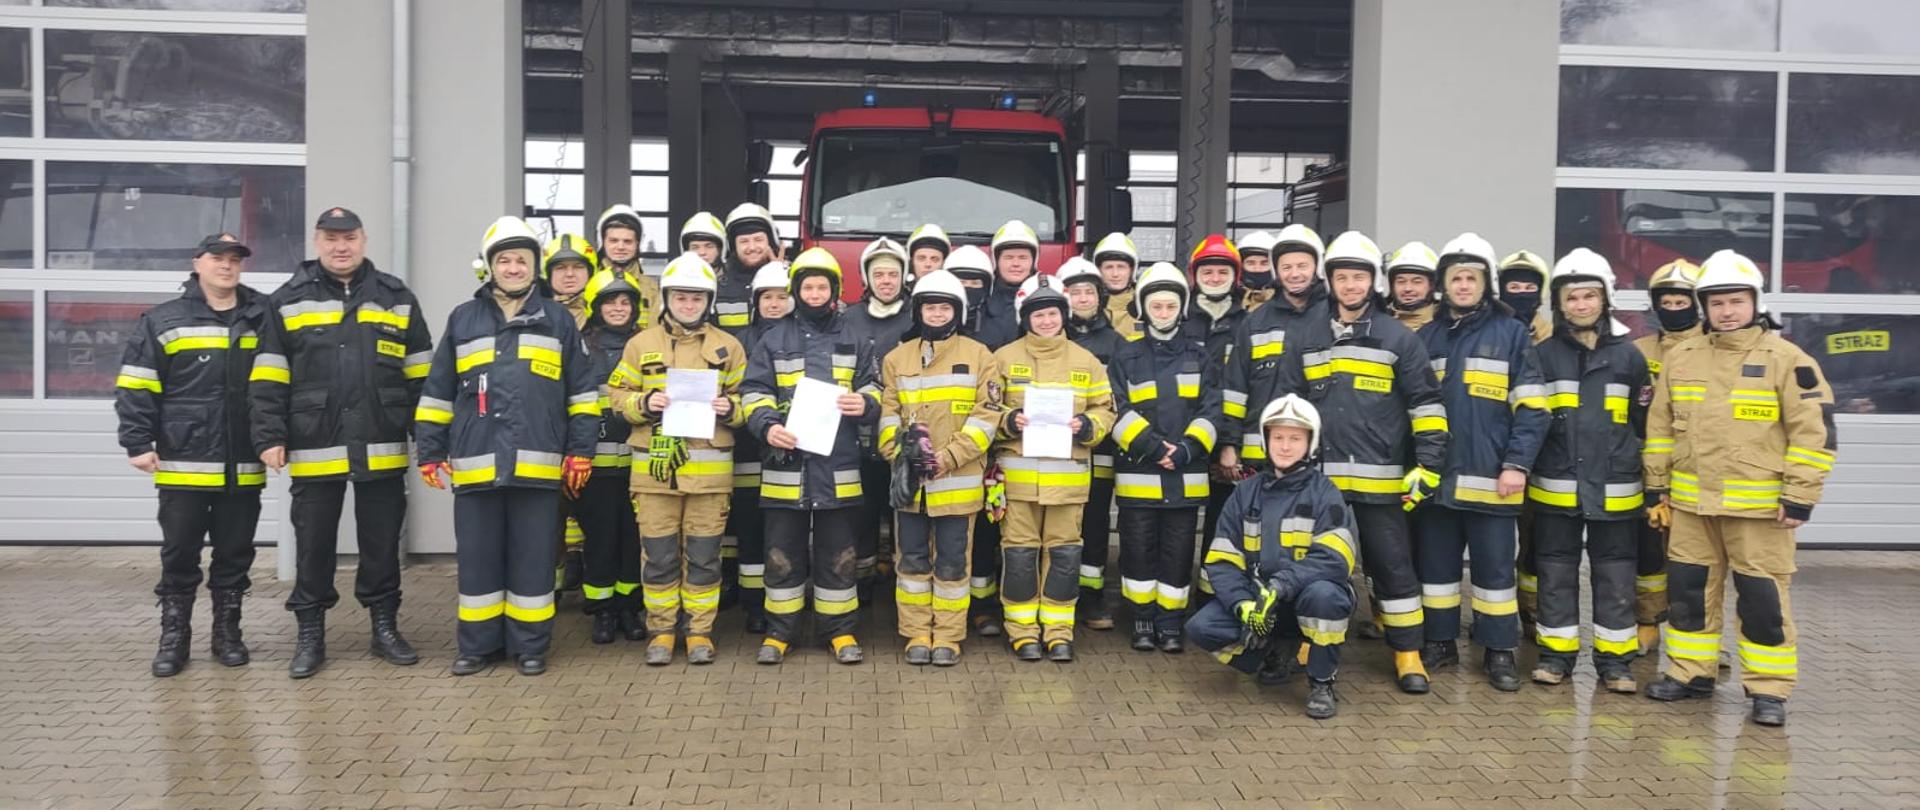 Na zdjęciu strażacy ratownicy na zdjęciu grupowym wraz z otrzymanymi zaświadczeniami o pozytywnym zdaniu egzaminu